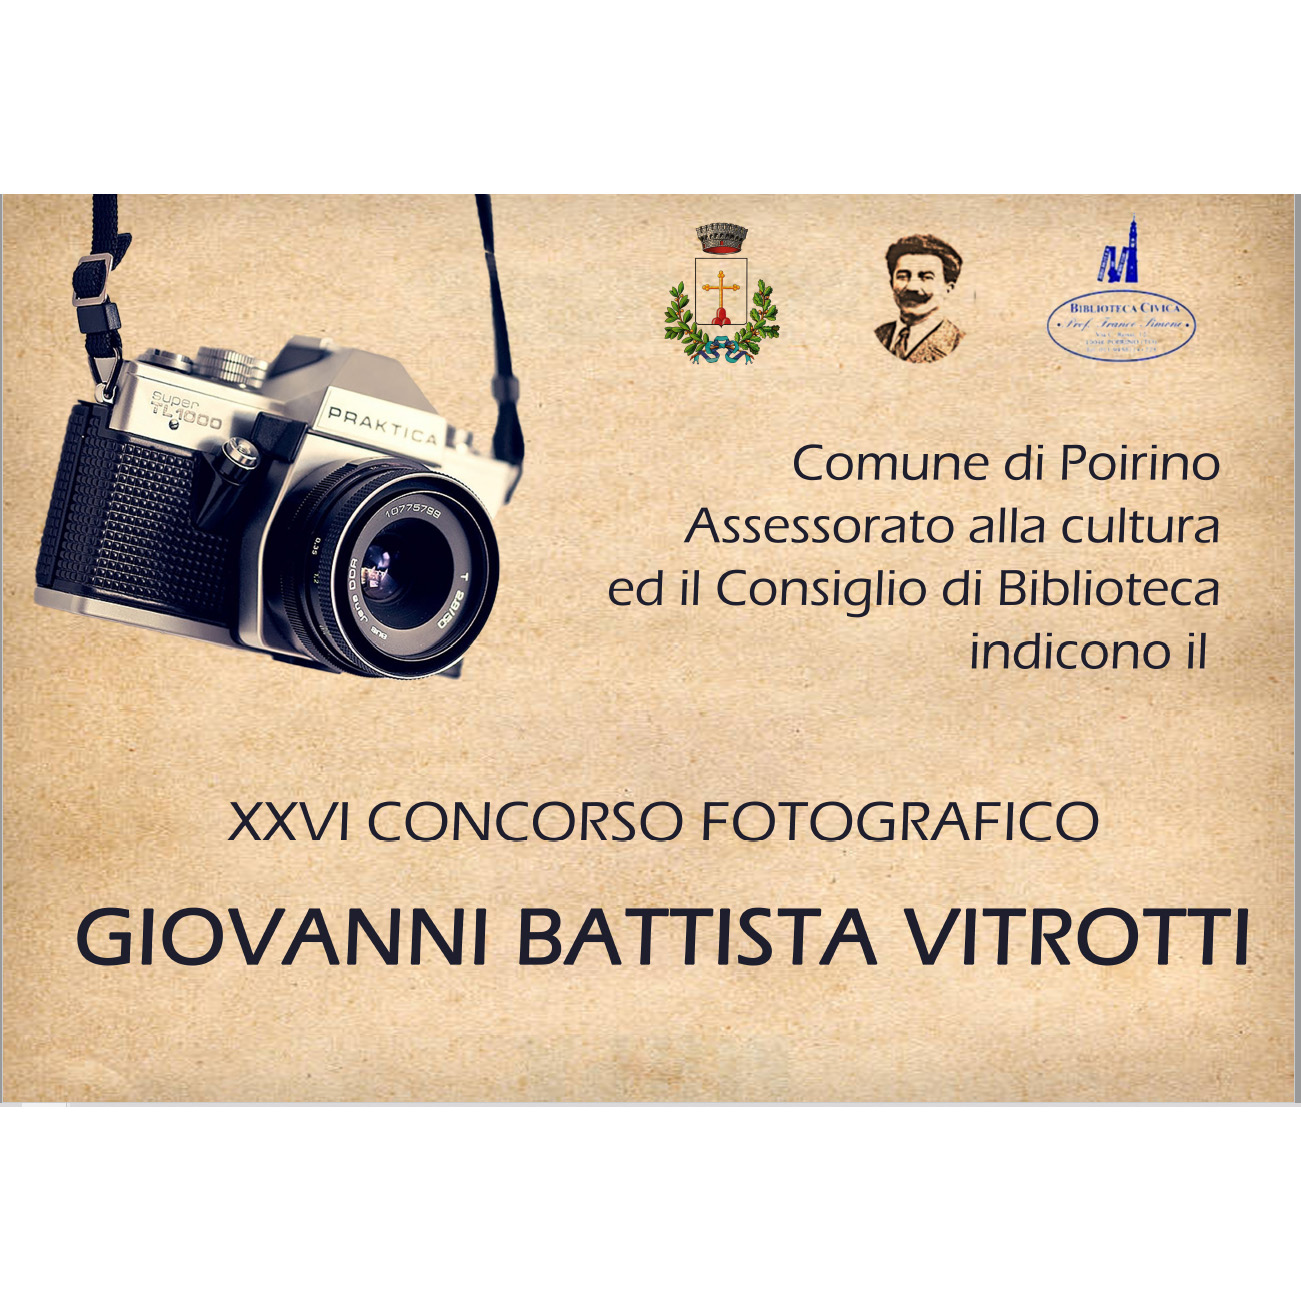 XXVI Concorso fotografico “Giovanni Battista Vitrotti” di Poirino